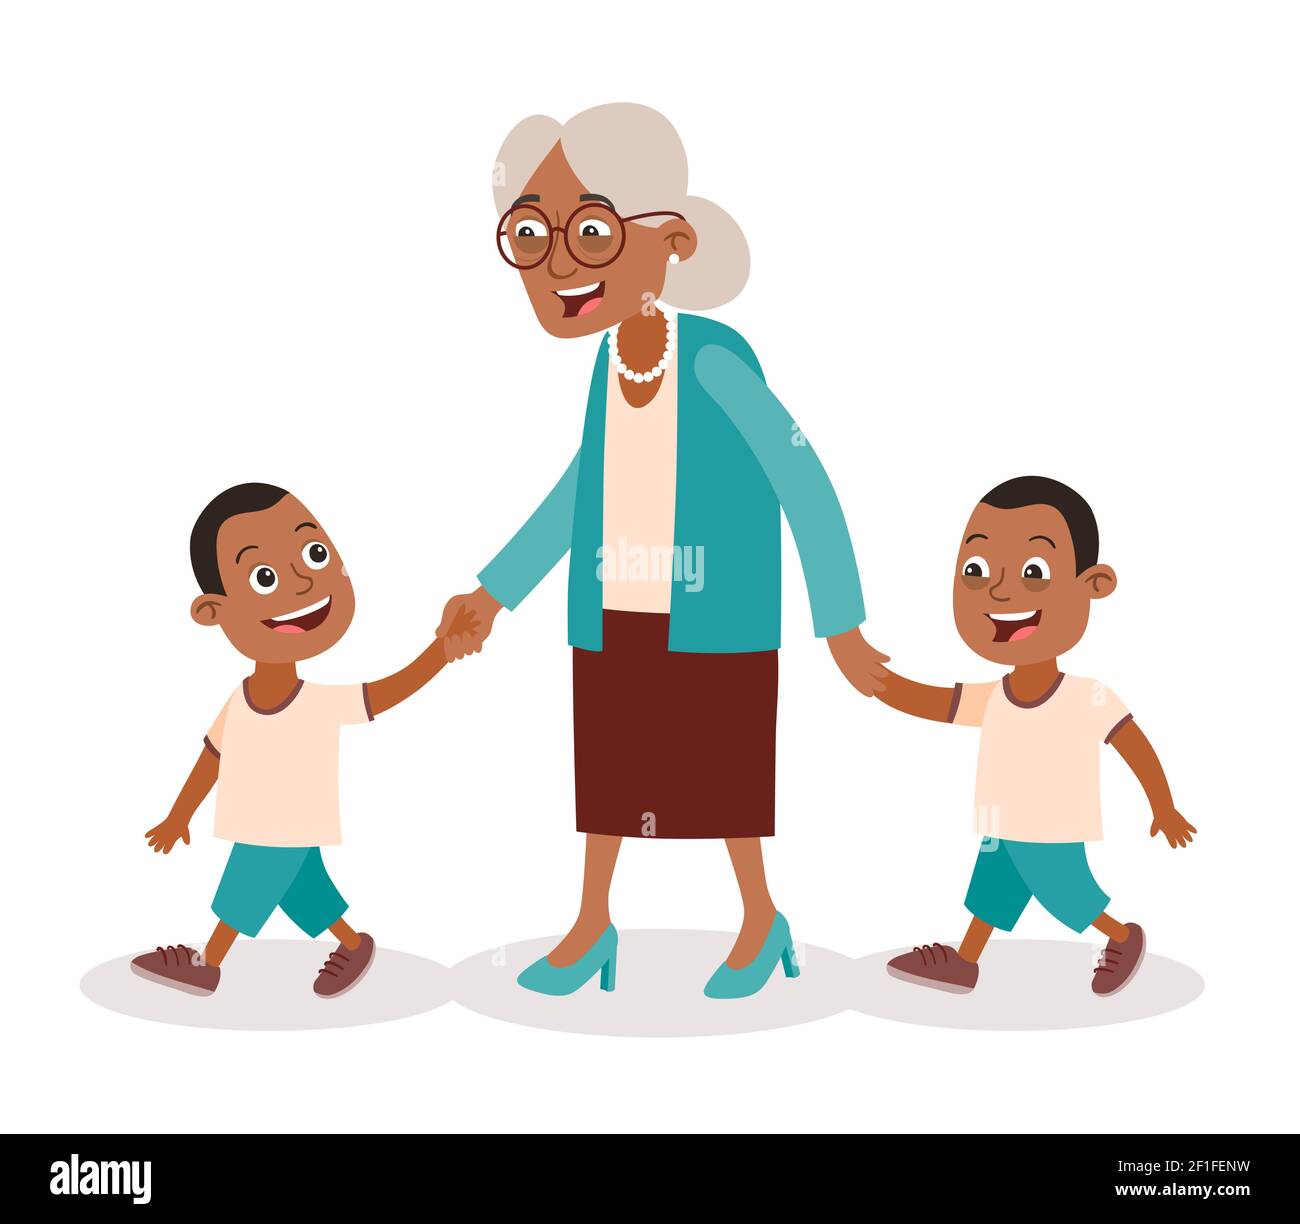 Großmutter mit ihren Enkeln. Zwei Jungen, Zwillinge. Sie nimmt sie an der Hand. Cartoon-Stil, isoliert auf weißem Hintergrund. Vektorgrafik Stock Vektor